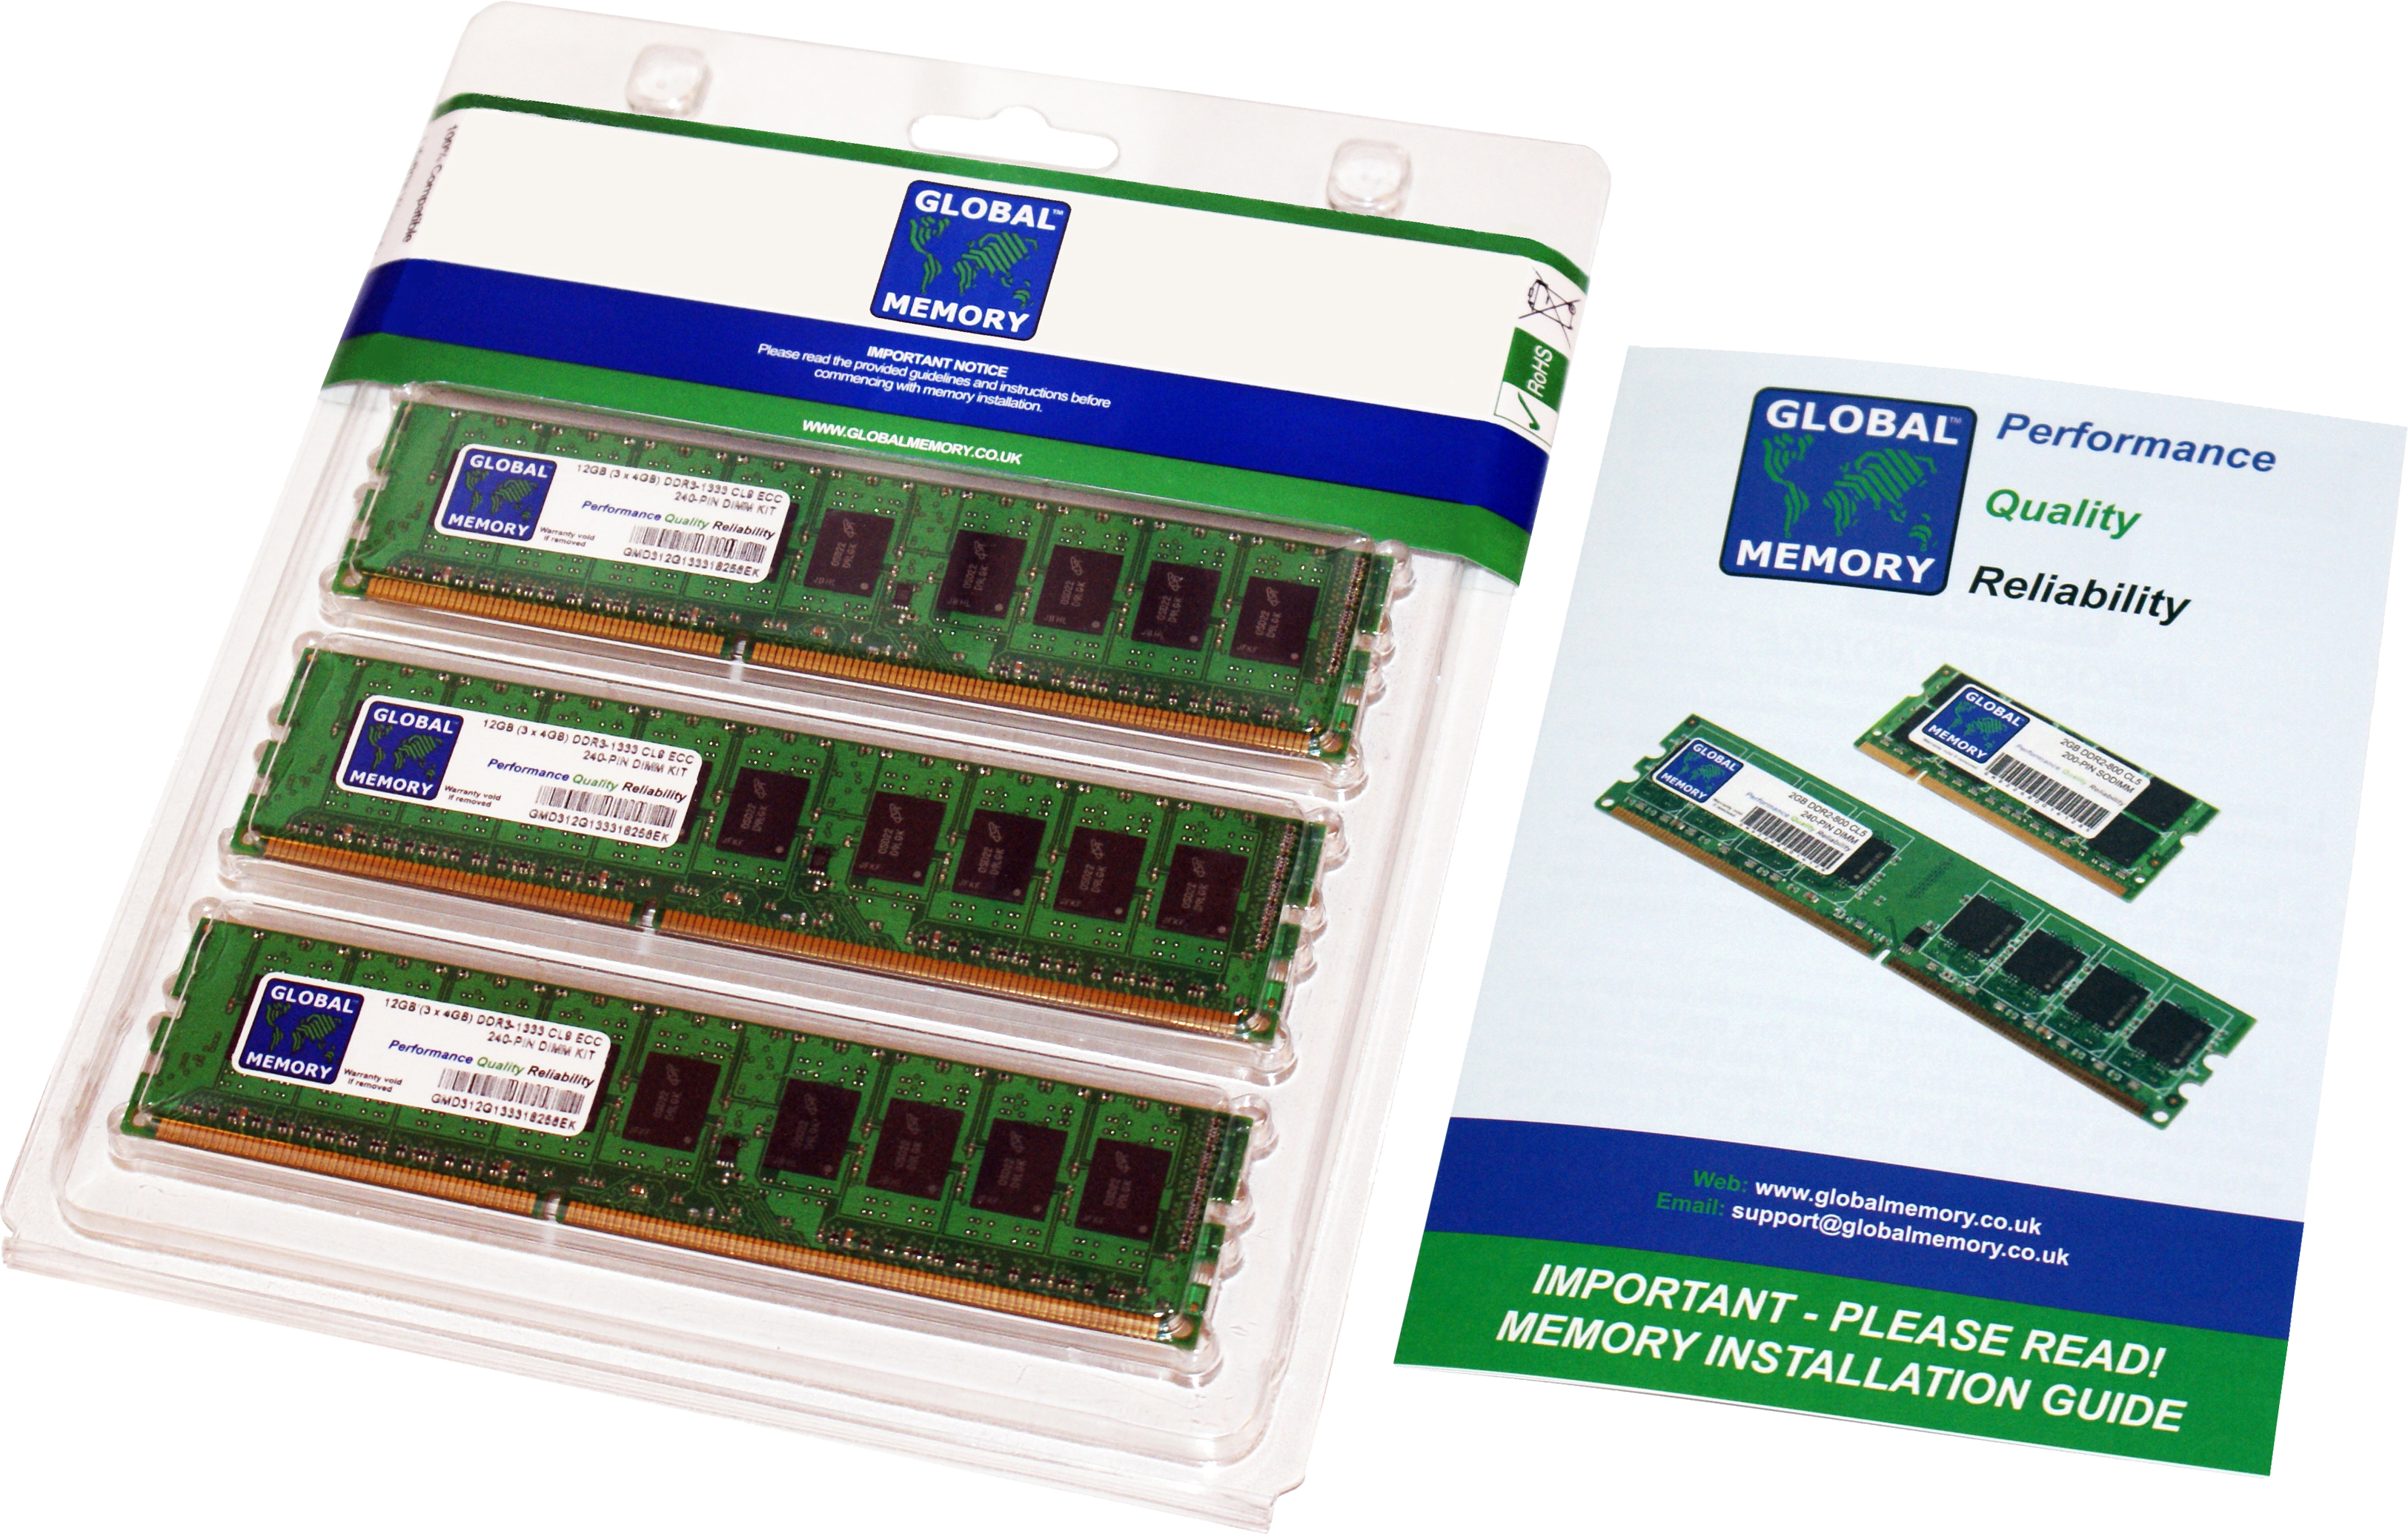 24GB (3 x 8GB) DDR3 1866MHz PC3-14900 240-PIN ECC DIMM (UDIMM) MEMORY RAM KIT FOR HEWLETT-PACKARD SERVERS/WORKSTATIONS